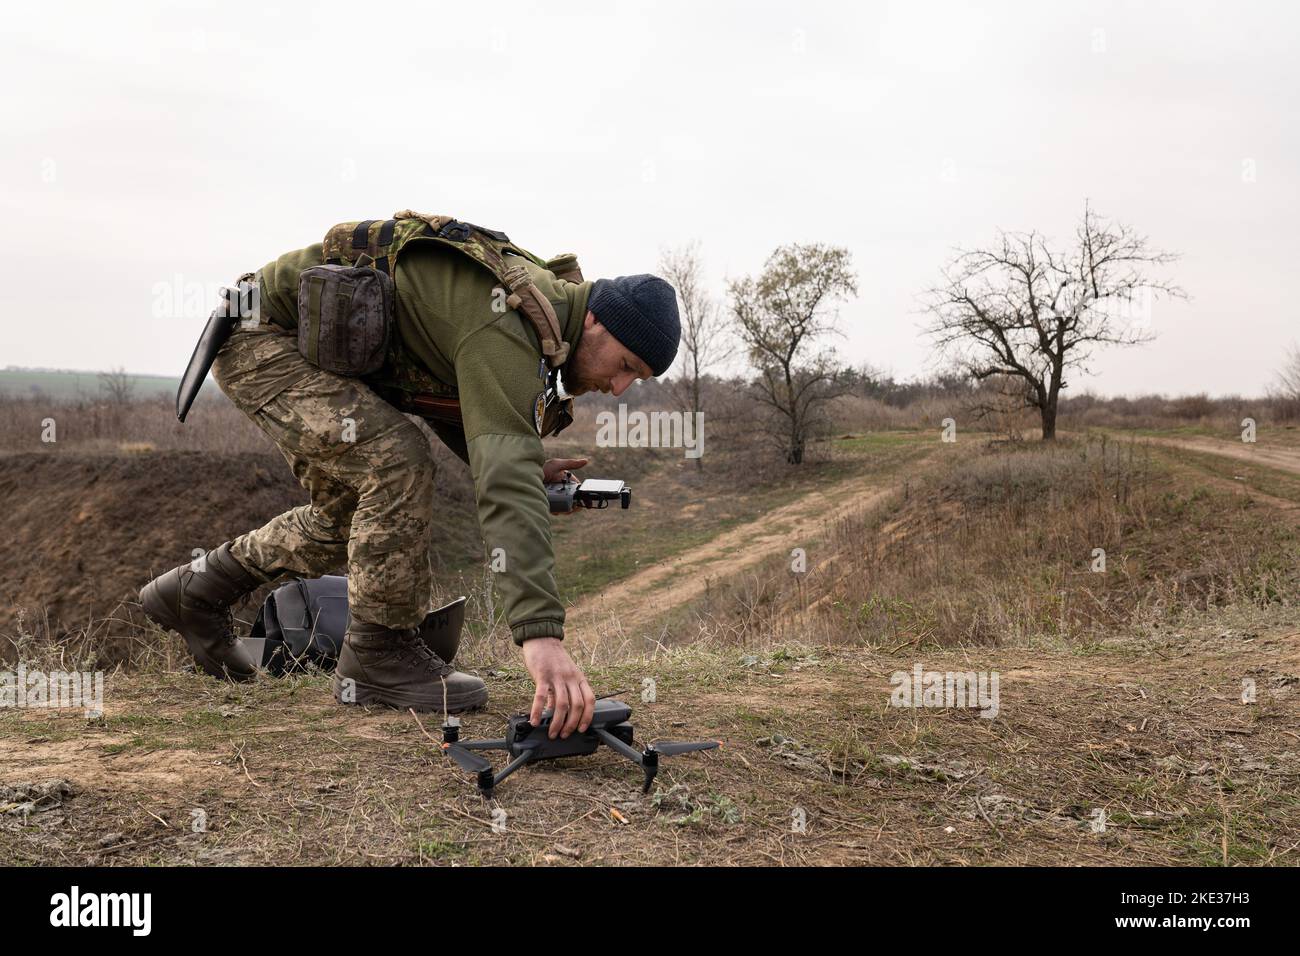 Ein ukrainischer Soldat der Brigade von 63 wurde gesehen, wie er eine Drohne am Boden platzierte, als Teil einer militärischen Ausbildung, die einen Angriff in den Schützengräben simulierte, um Kherson zu gewinnen. Das Training, an dem 31 Soldaten beteiligt sind, zielt darauf ab, die Kampfkünste auf dem Schlachtfeld zu verbessern. Das russische Militär wurde angewiesen, sich aus der südukrainischen Stadt Cherson zurückzuziehen und sich vollständig vom westlichen Ufer des Dnipro-Flusses zurückzuziehen. Es ist von Bedeutung, da die regionale Hauptstadt seit der Invasion im Februar erobert wurde. Stockfoto